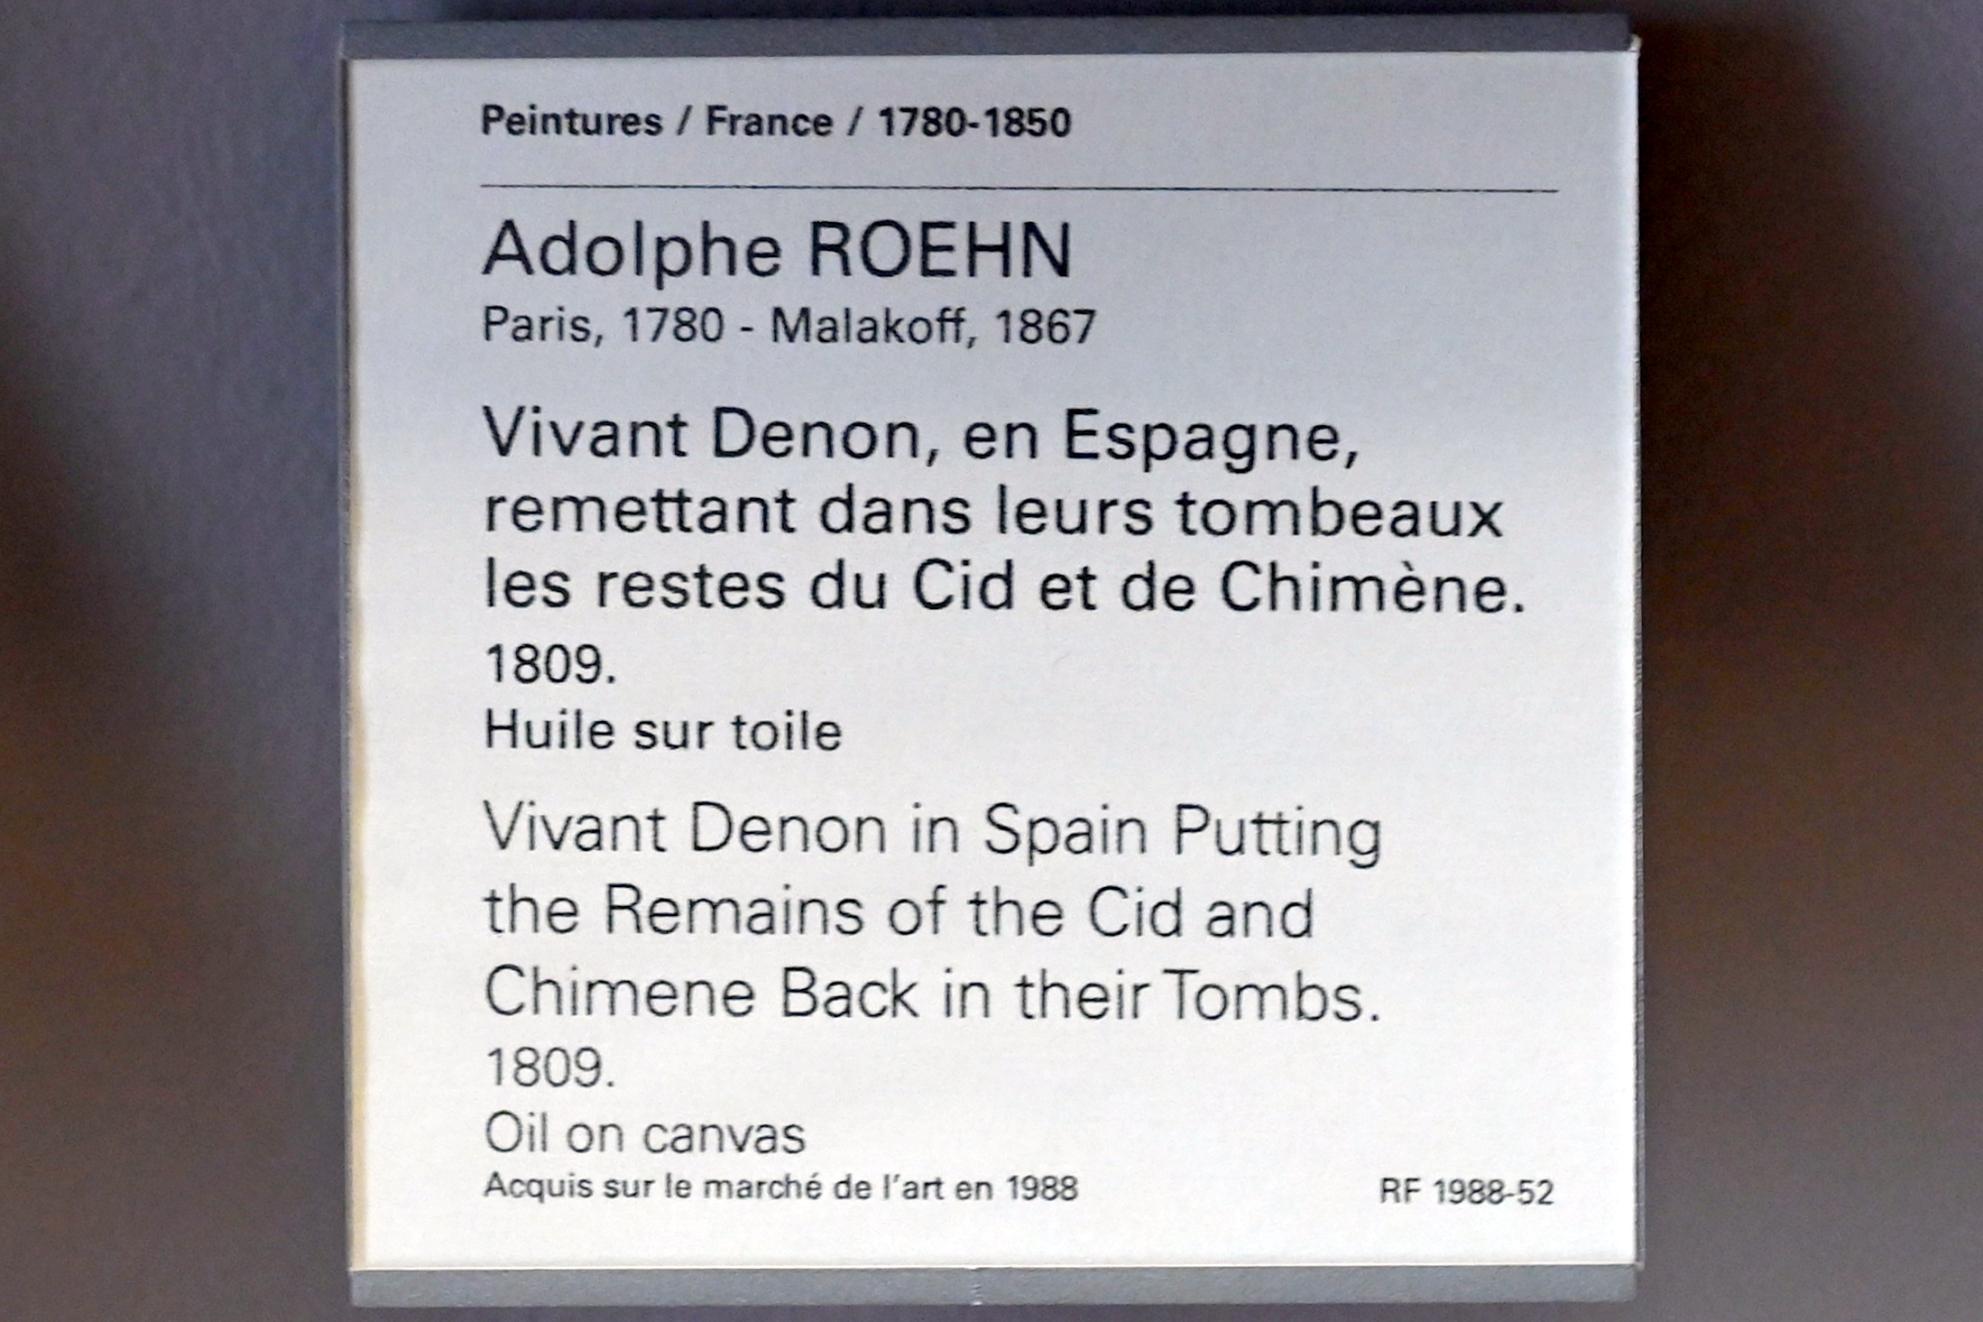 Adolphe Roehn (1809), Der lebendige Denon in Spanien bringt die Überreste von Cid und Chimene in ihre Gräber zurück, Paris, Musée du Louvre, Saal 937, 1809, Bild 2/2